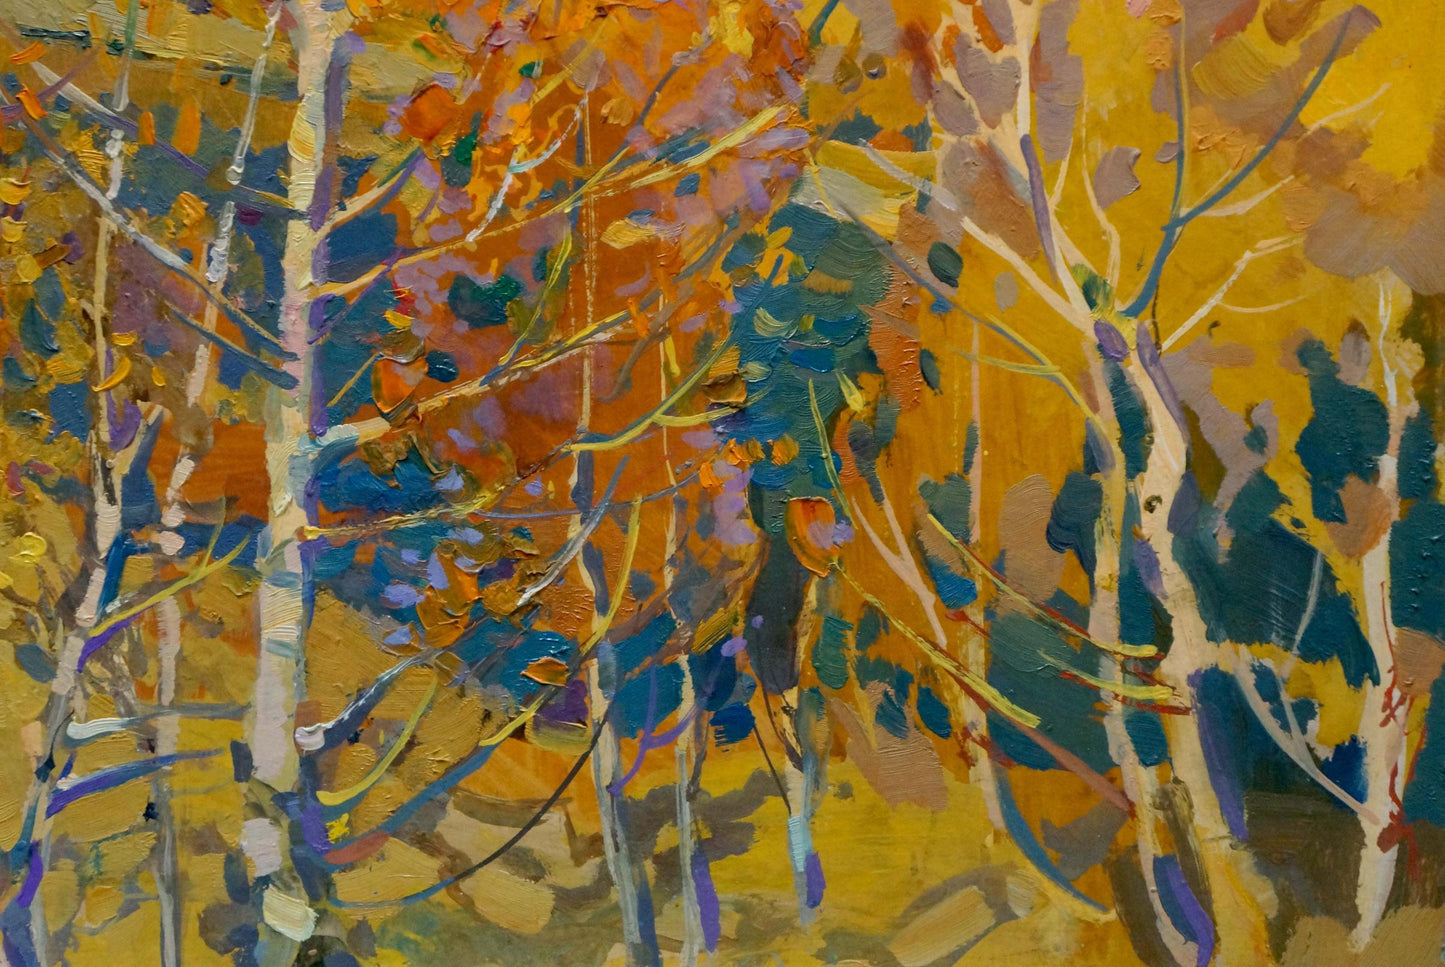 Kolesnik's oil painting showcases the beauty of the golden season